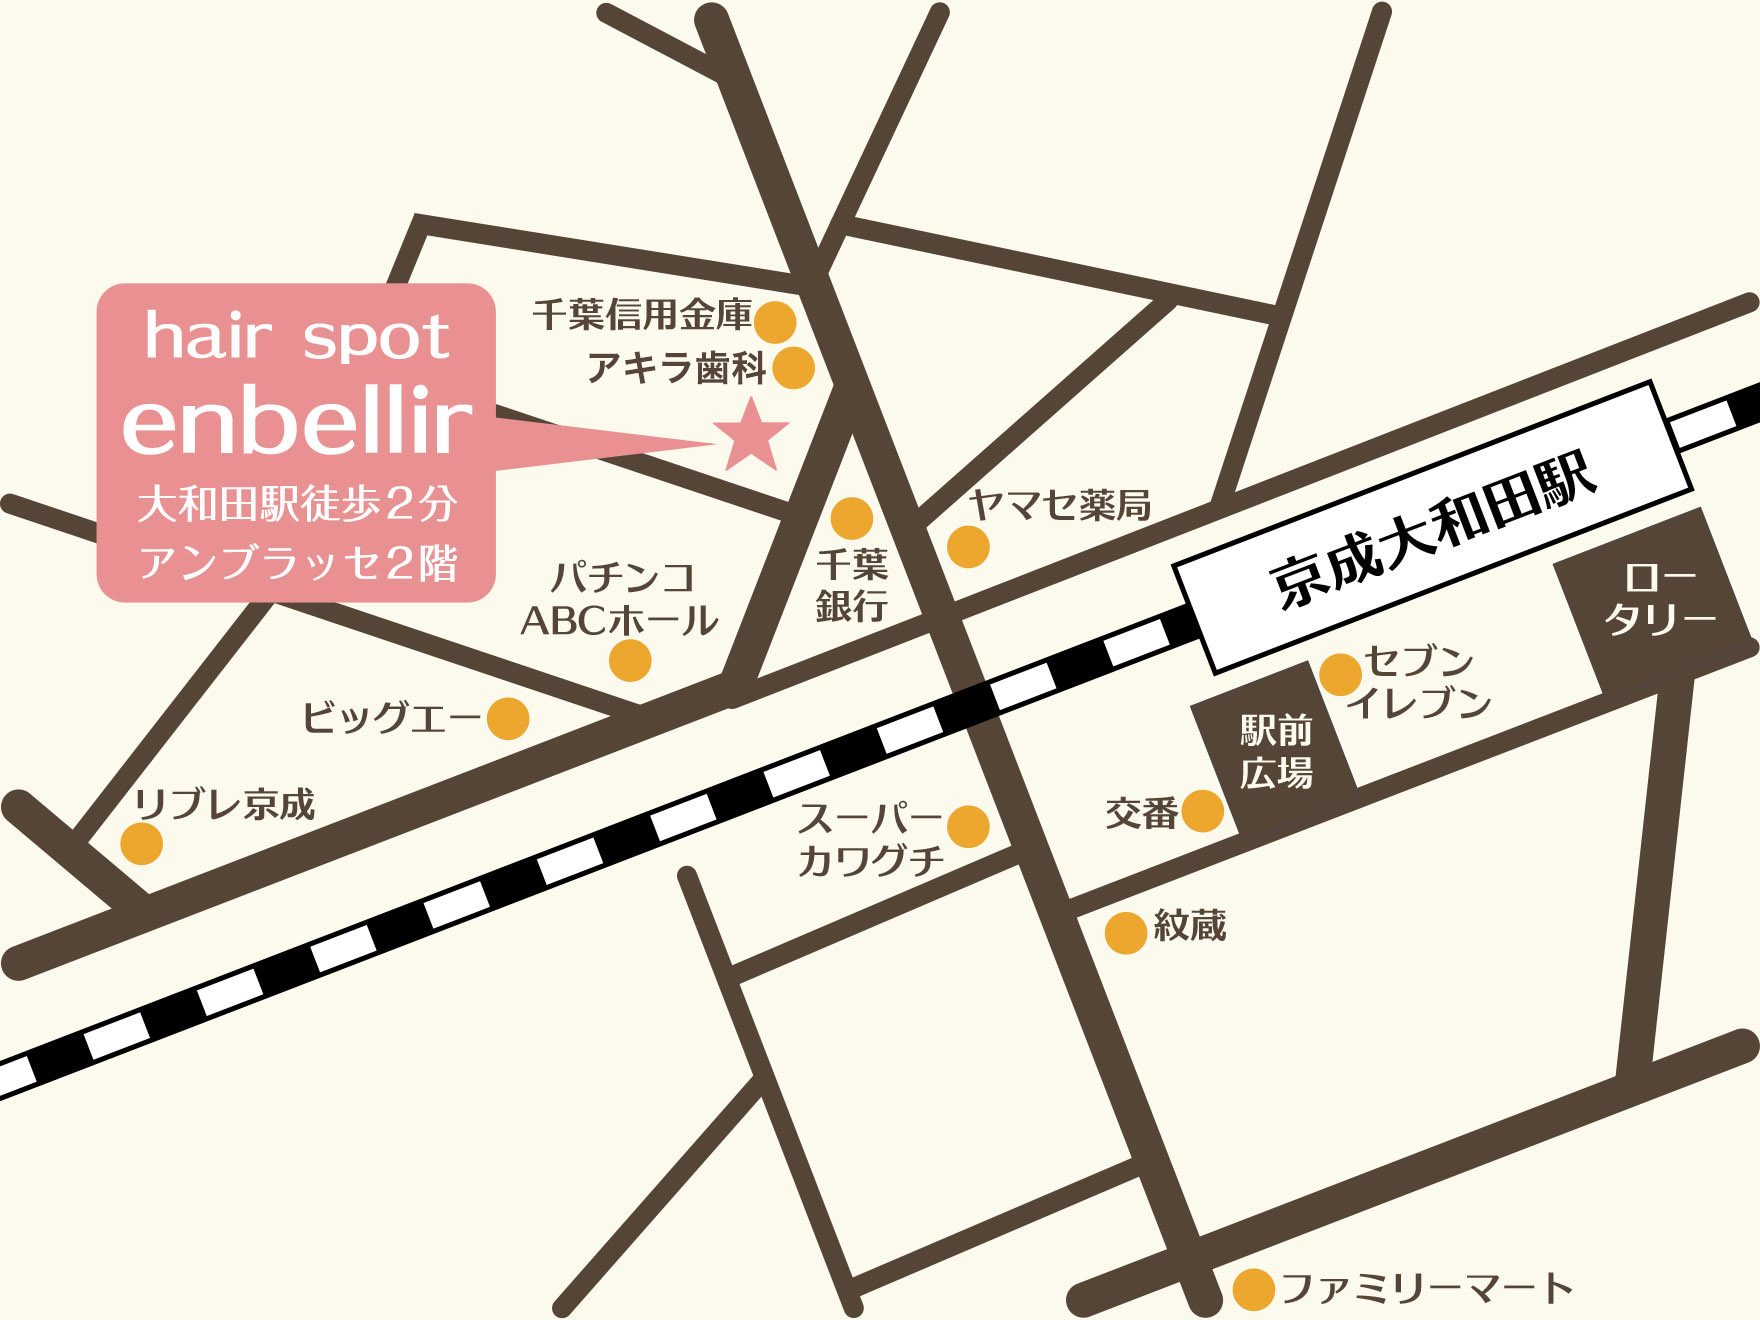 京成大和田駅からアンベリールまでの道順をご案内します。京成大和田駅出口を右手に進み、突き当たりの道を右折し、踏切を渡り最初の信号の横断歩道を渡ったところにある洋菓子店アンブラッセのあるビルの2階がアンベリールになっております。